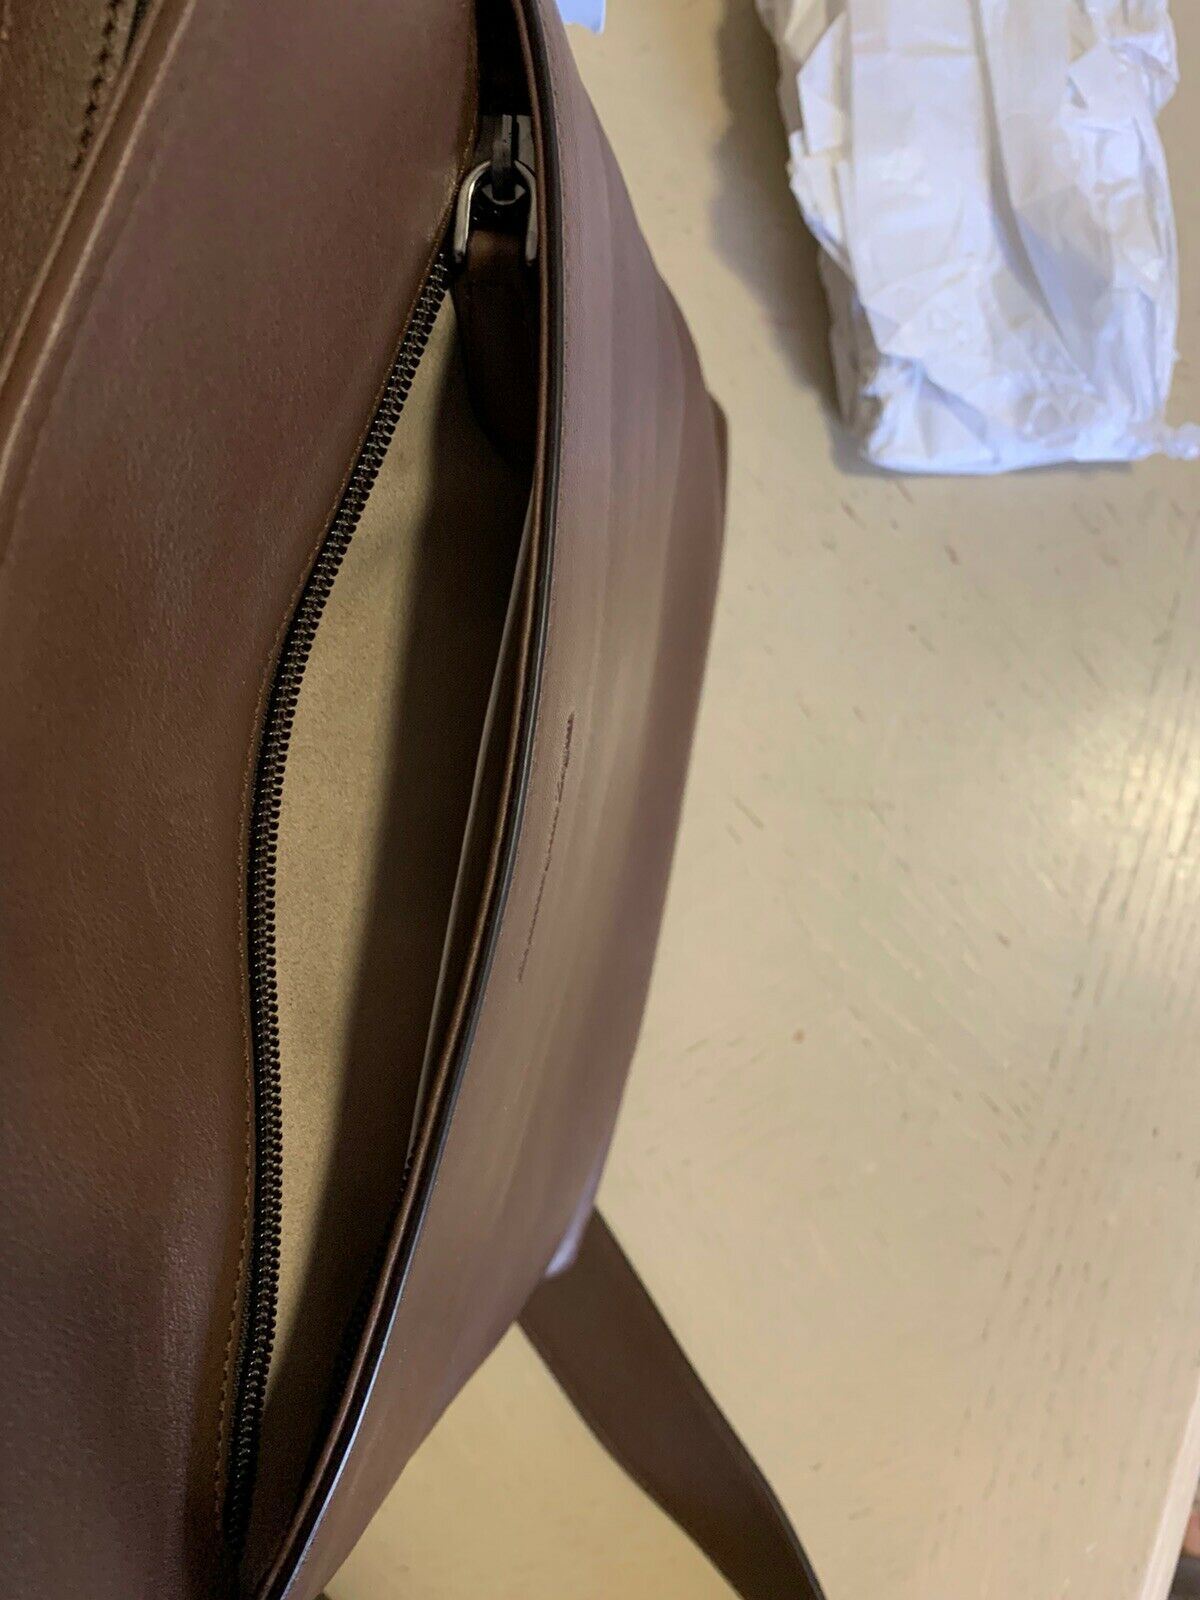 New $1595 Ermenegildo Zegna Pelletessuta Leather Messenger Bag DK Brown Italy